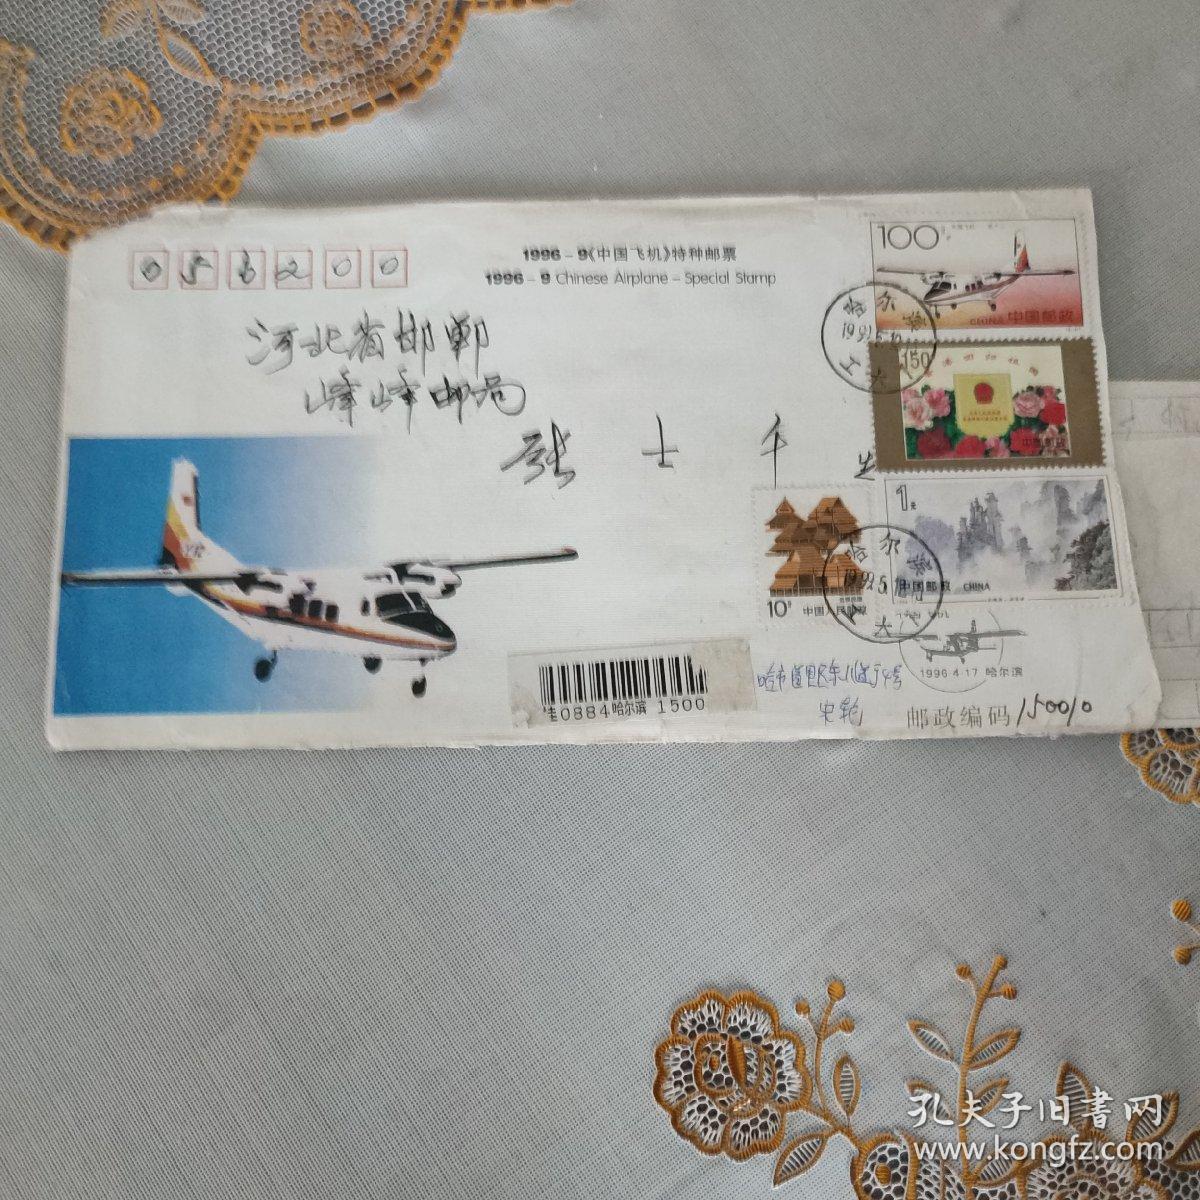 旧信封和旧邮票(1996一9中国飞机特种邮票首日封)